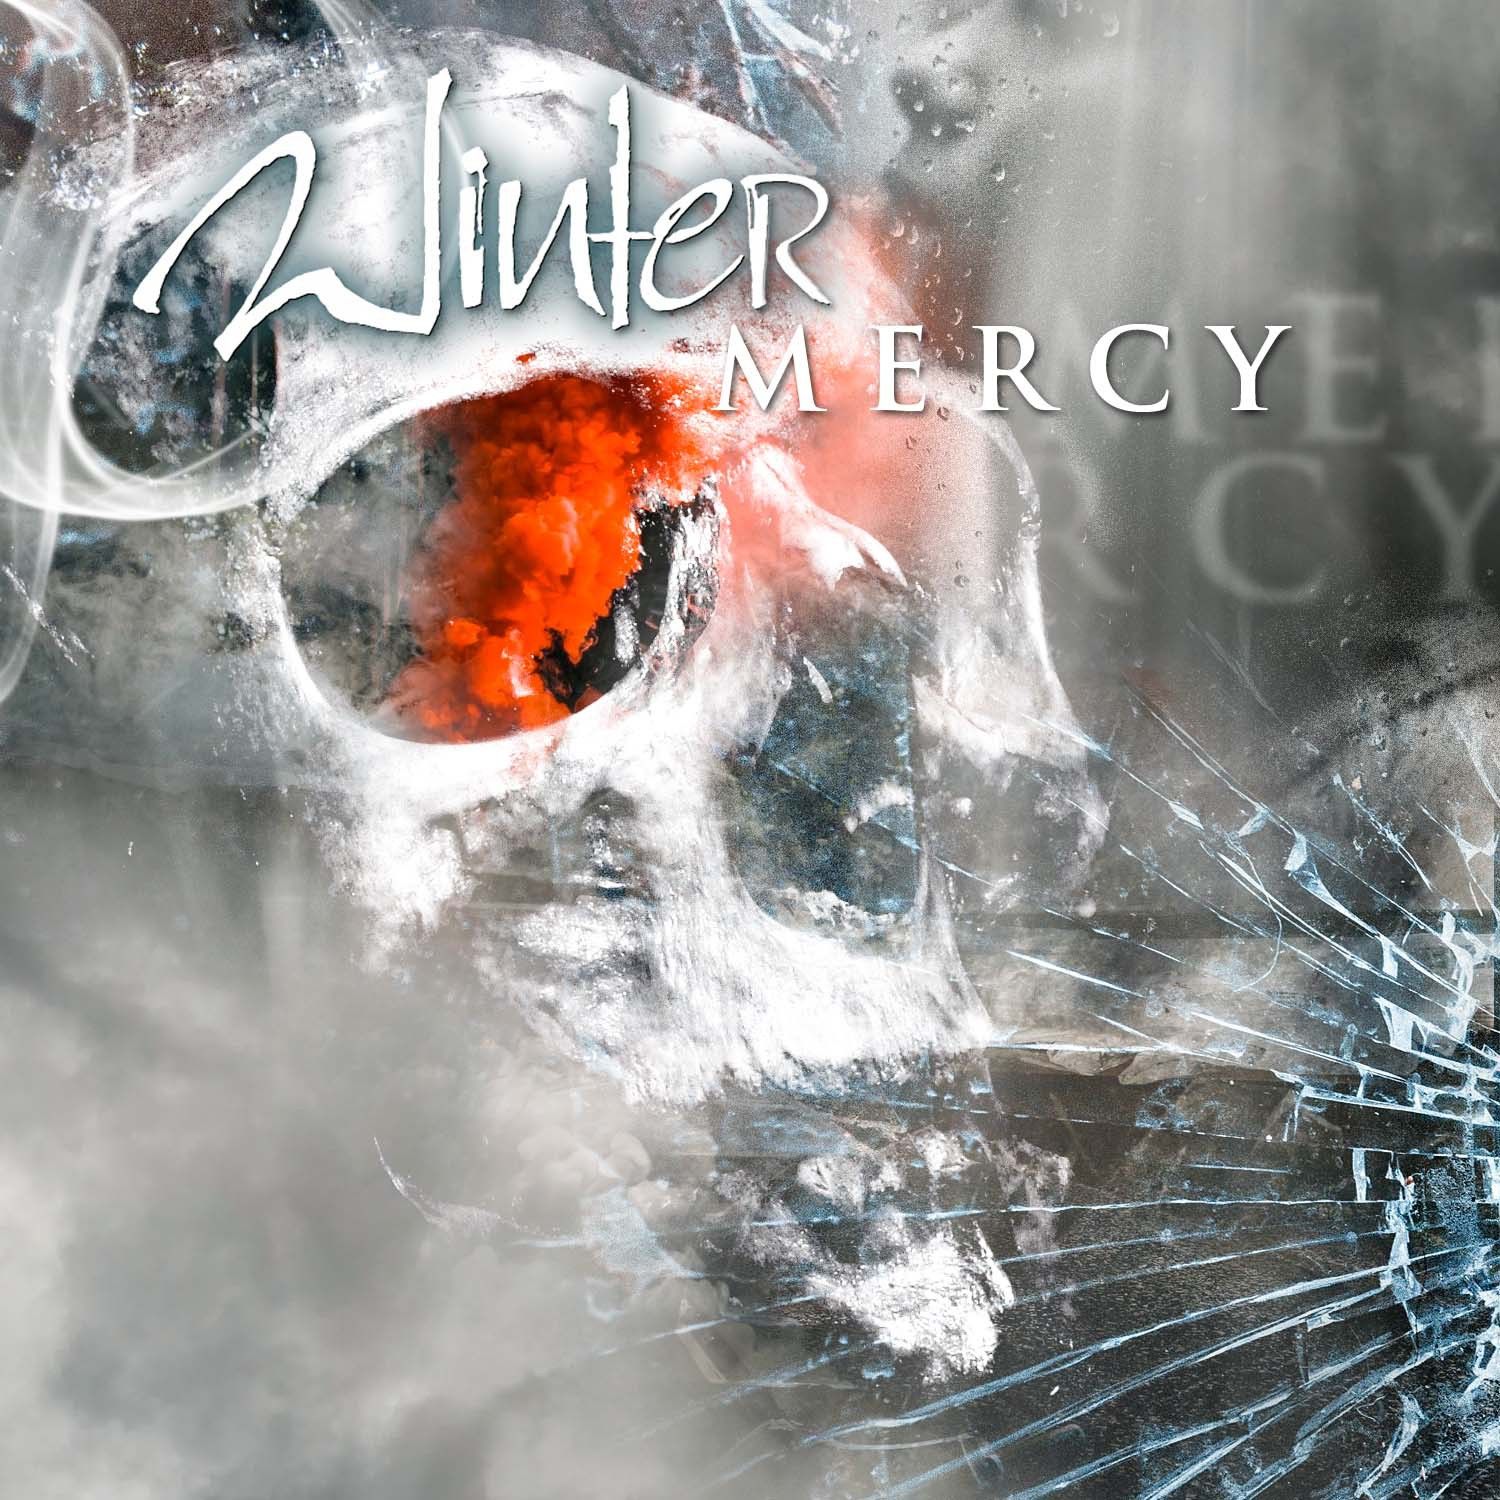 'Mercy'-Video veröffentlicht